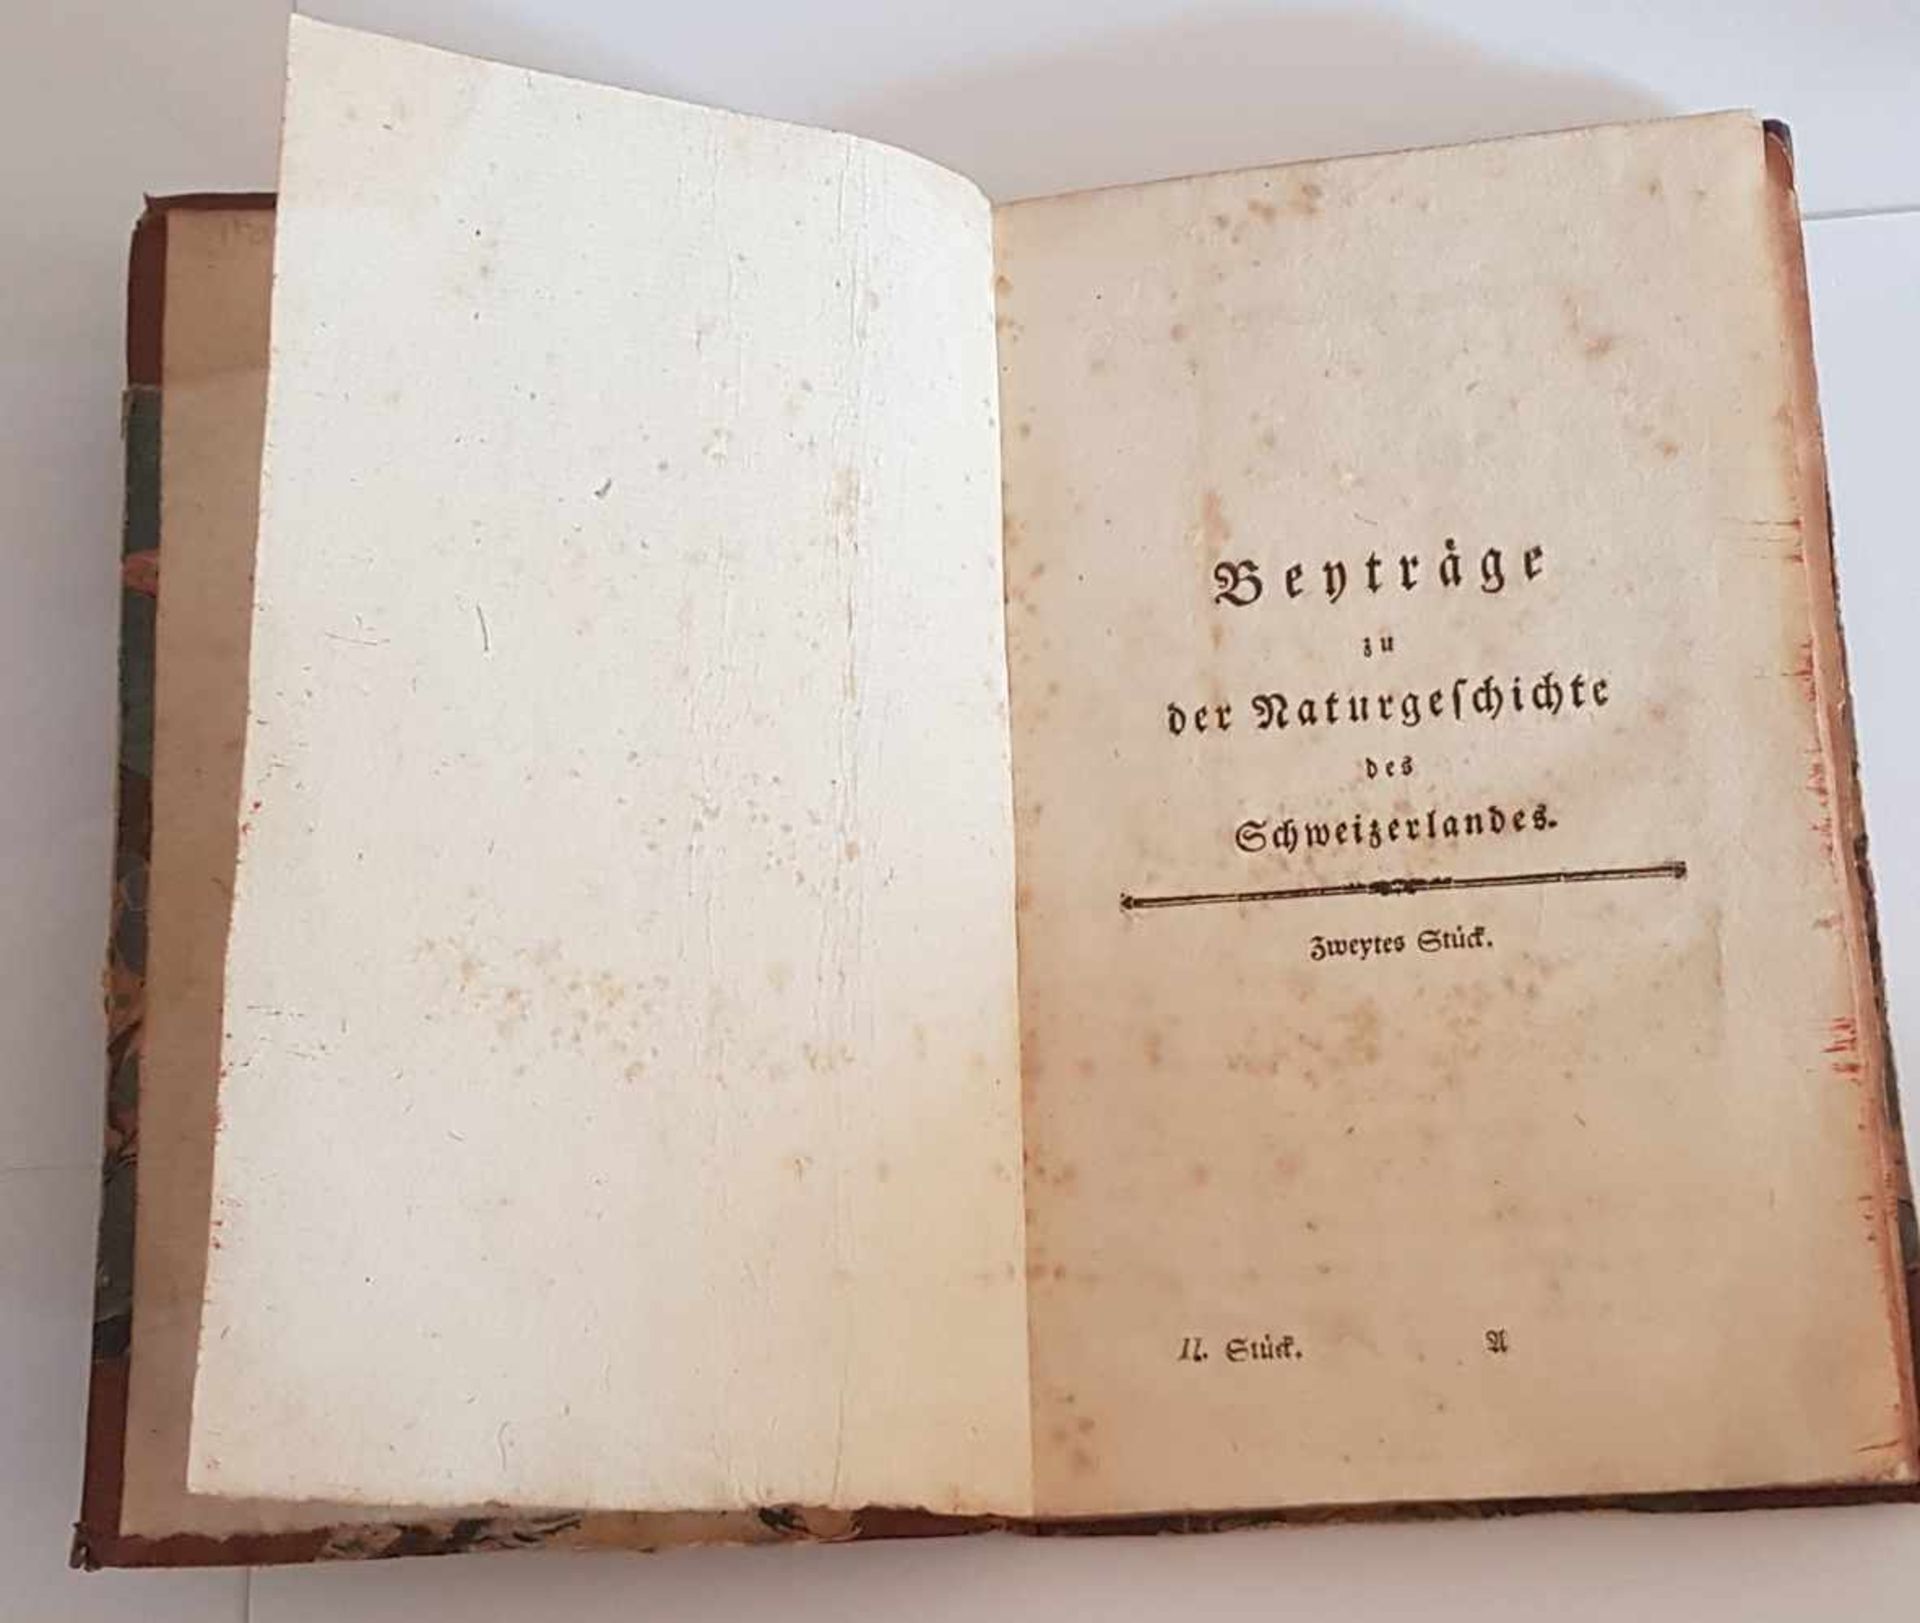 Wyttenbach Jacob Samuel ,Beyträge zu der Naturgeschichte des Schweizerlandes , Erscheinungsjahr 1775